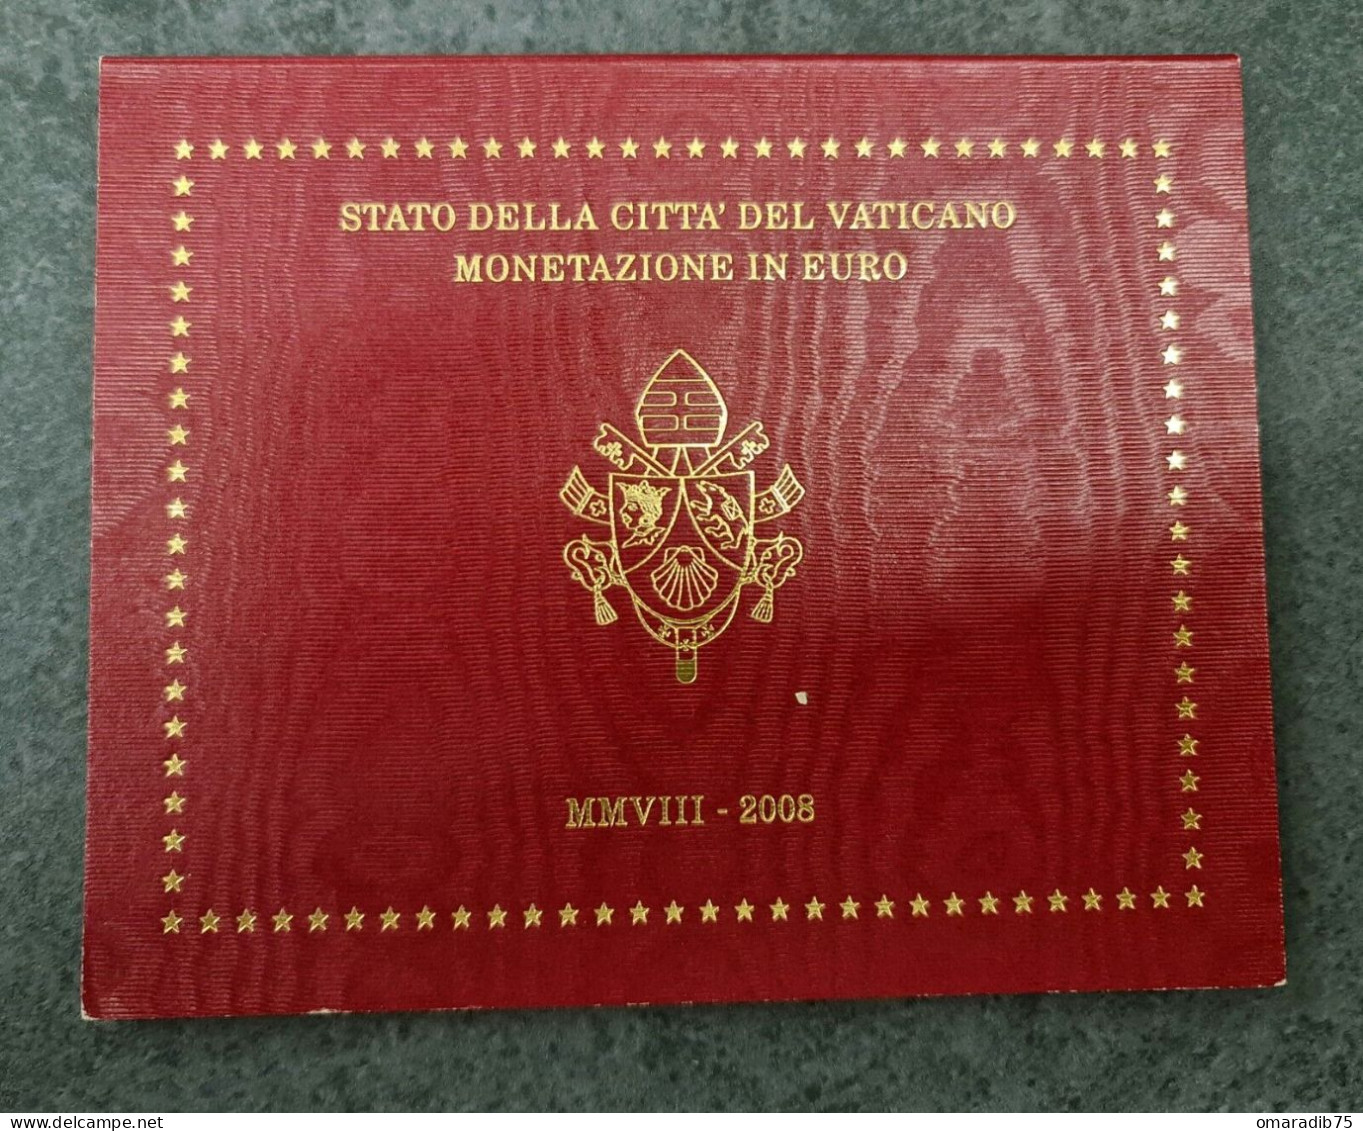 VATICAN Coffret Euros Vatican 2012 BE PROOF FDC - Vatikan